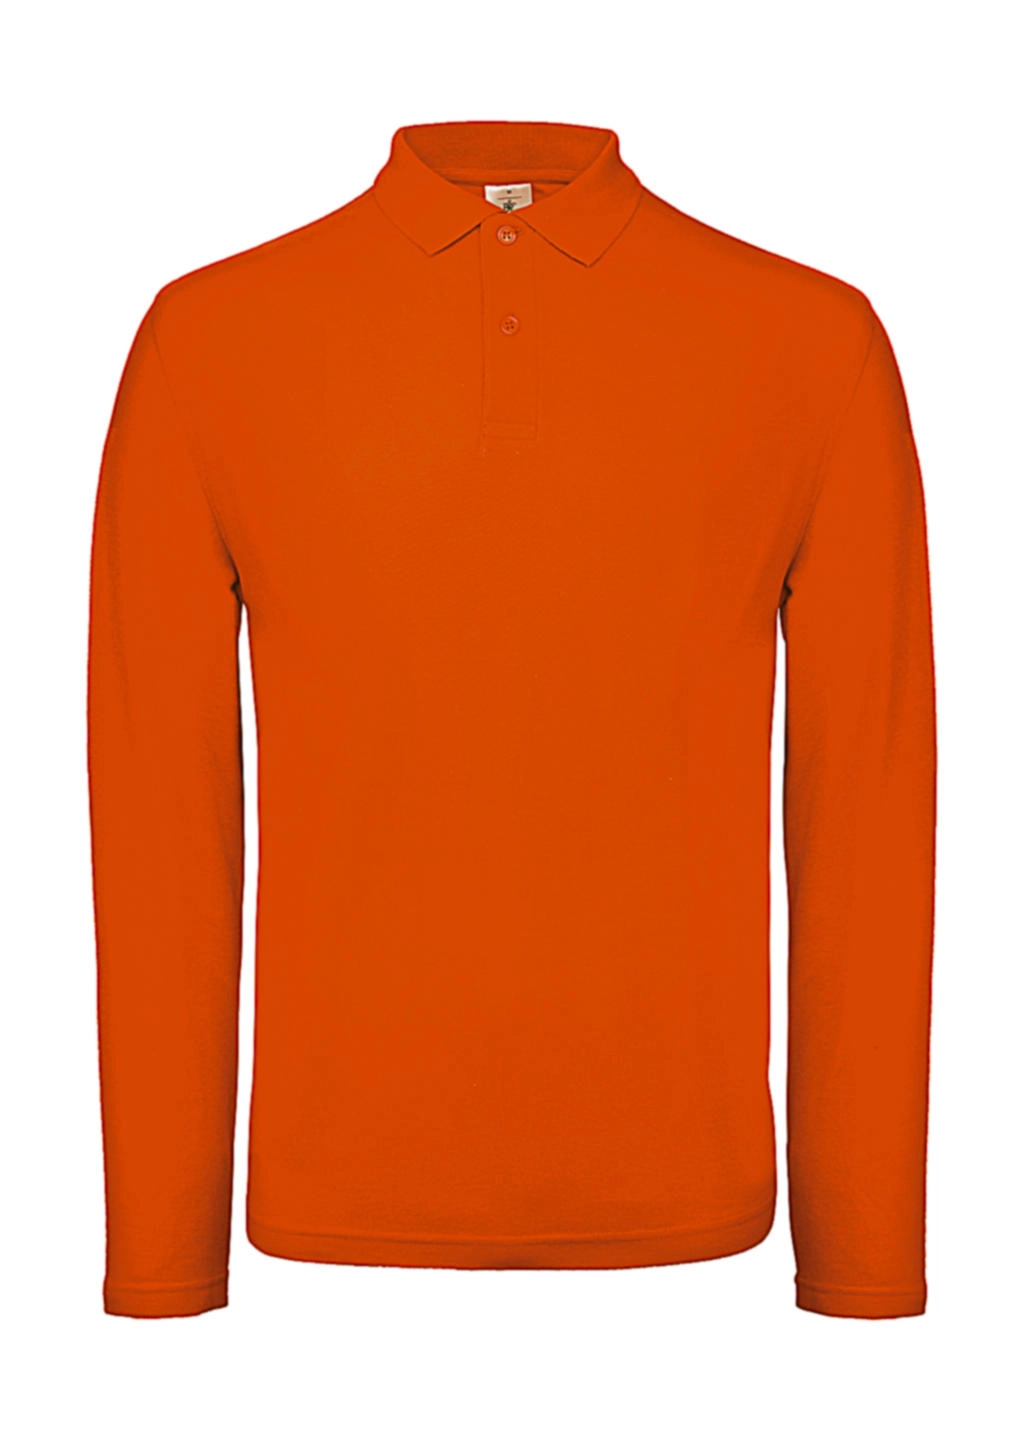 ID.001 LSL Polo zum Besticken und Bedrucken in der Farbe Orange mit Ihren Logo, Schriftzug oder Motiv.